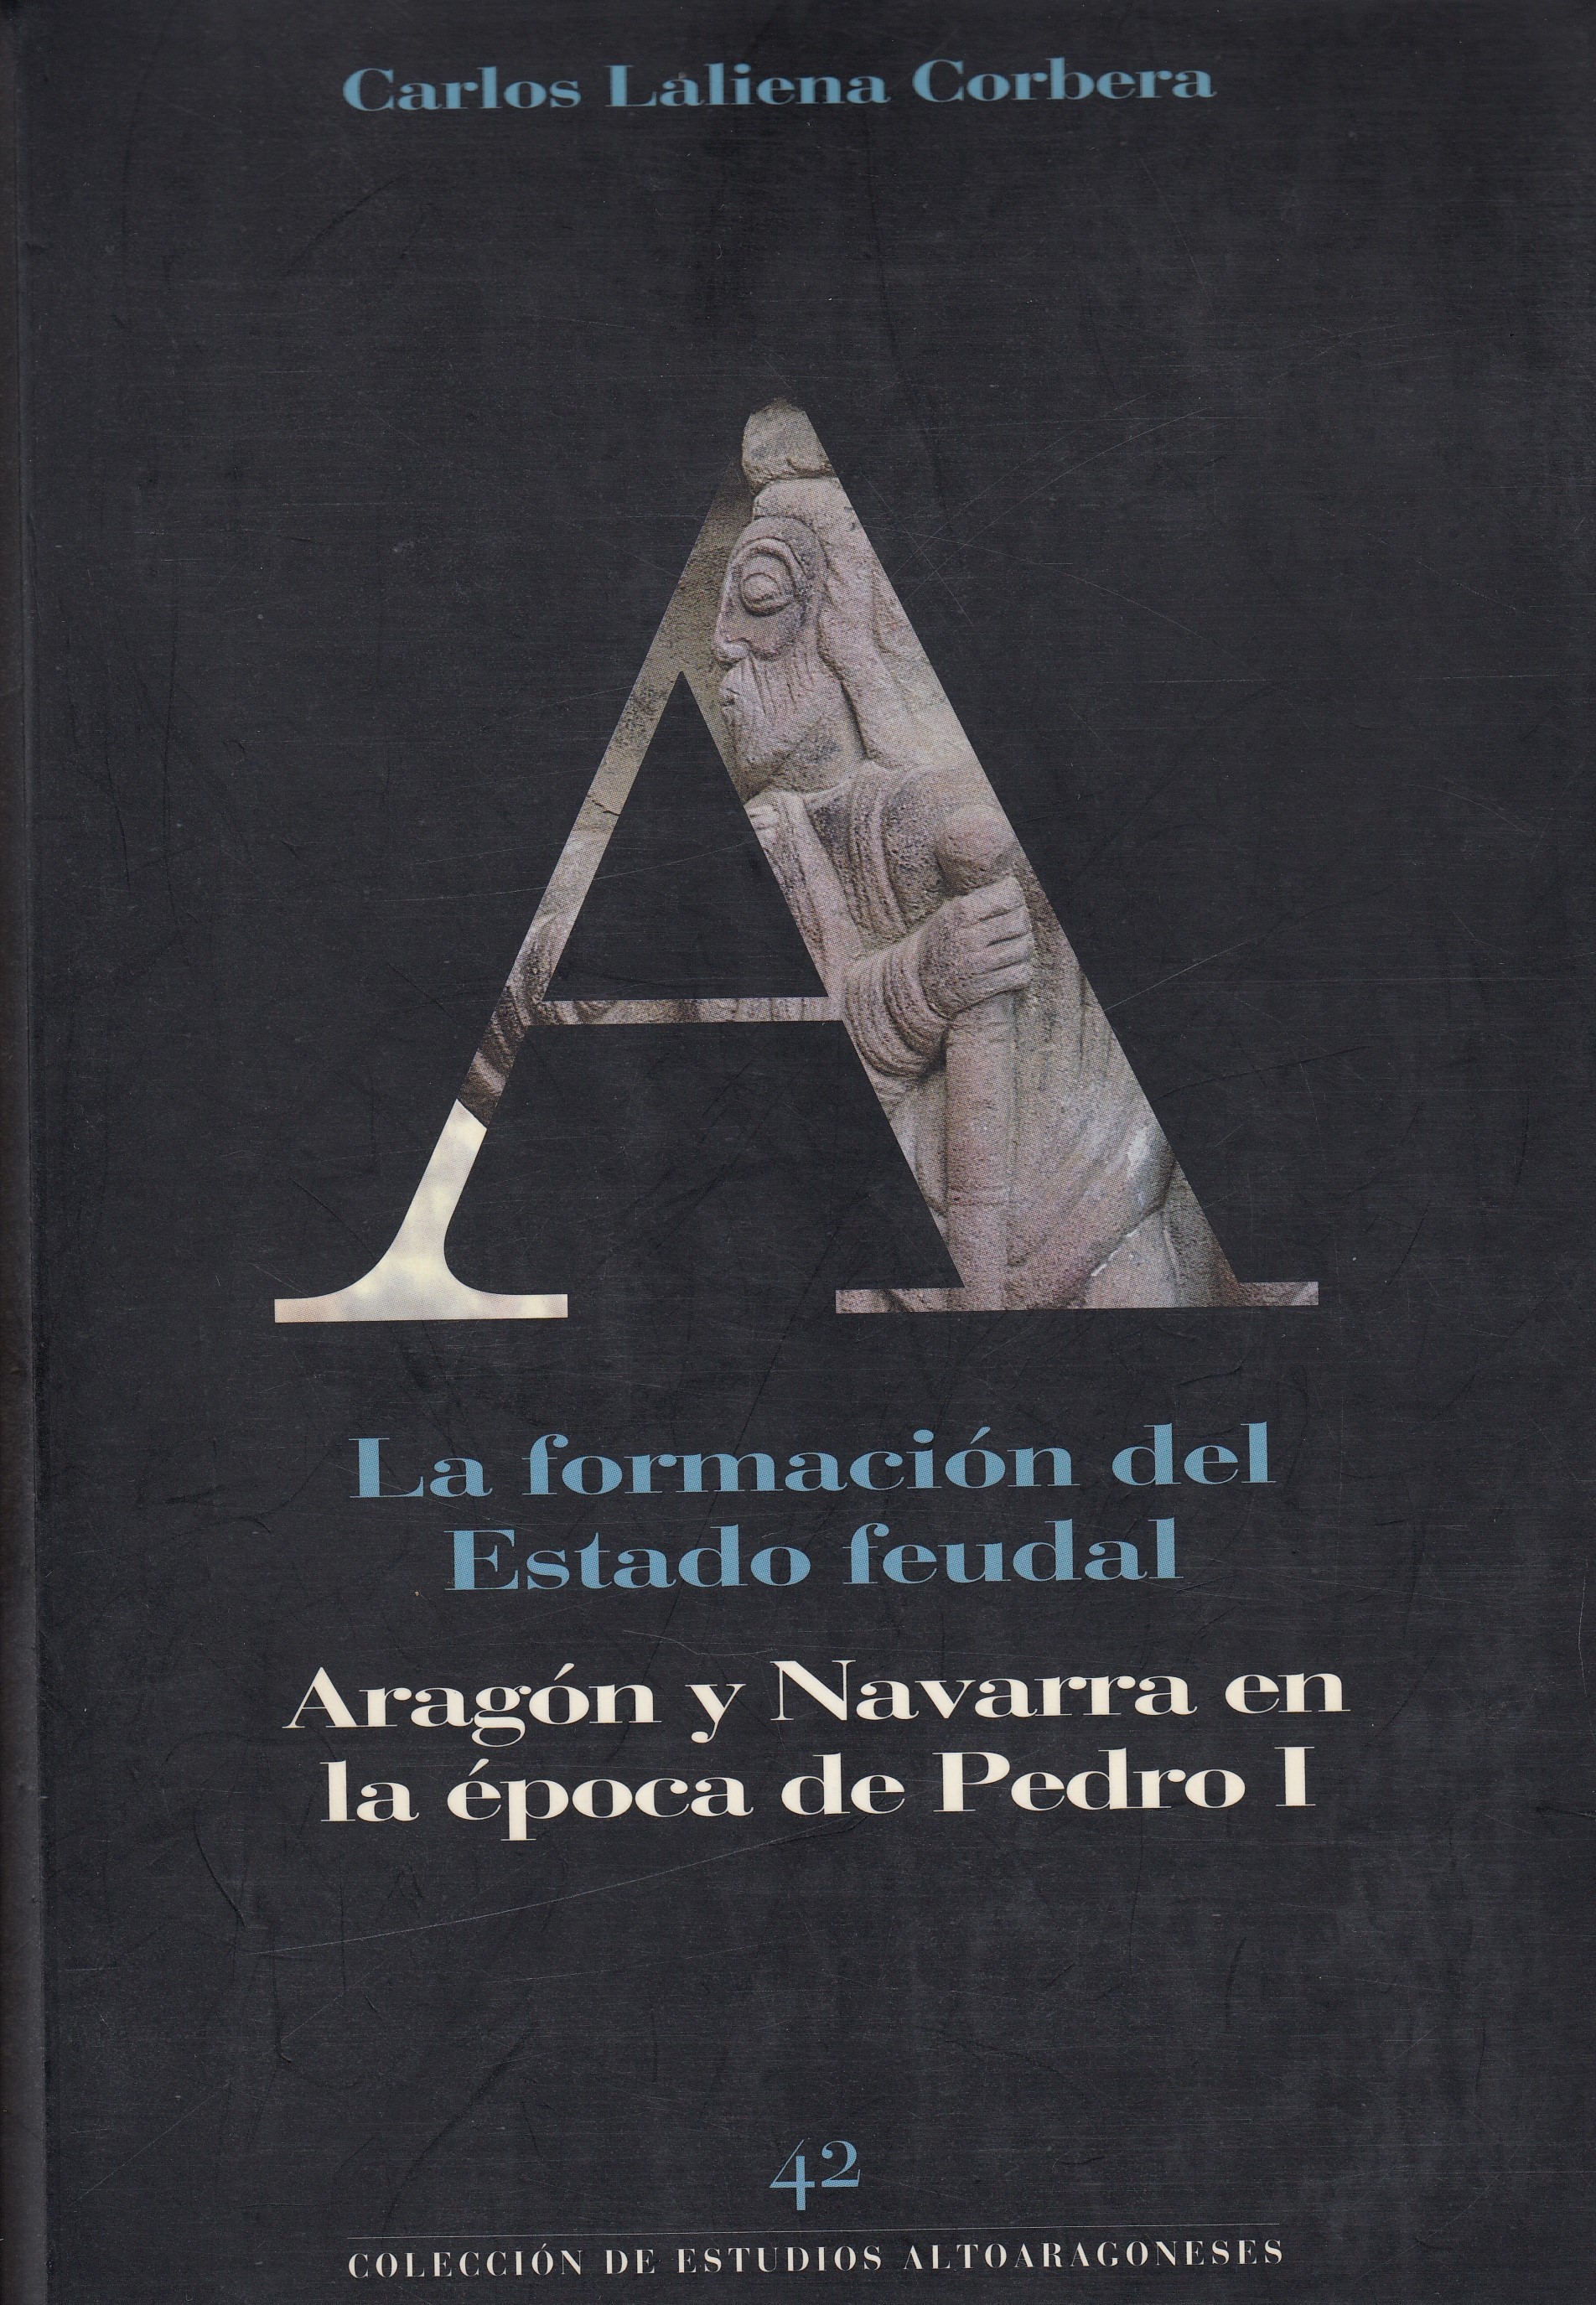 ''La formación del Estado feudal. Aragón y Navarra en la época de Pedro I'' (1996)